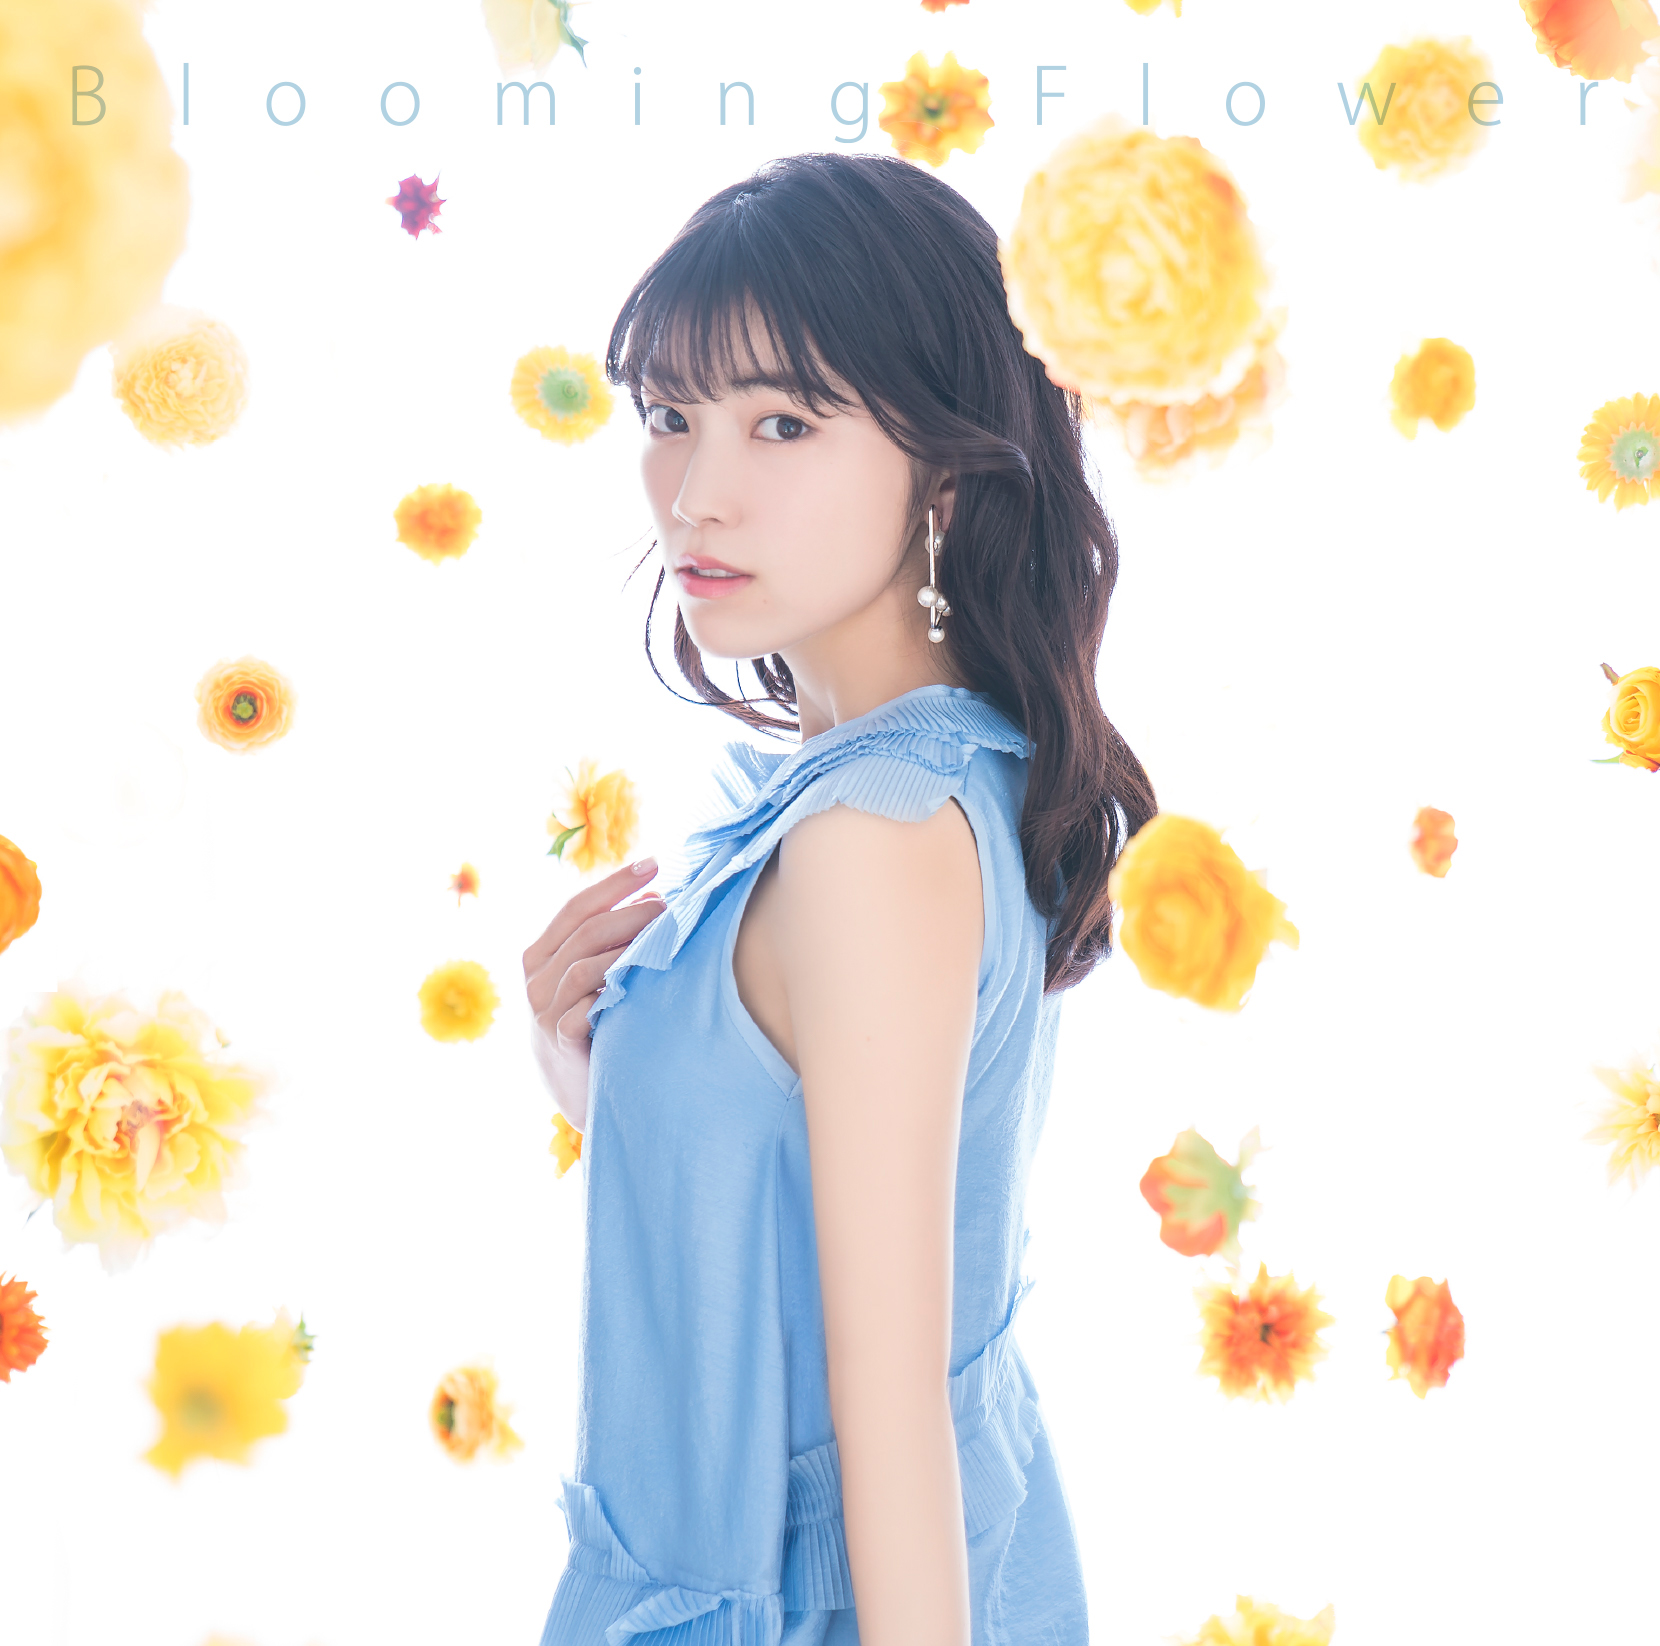 石原夏織さんのデビューシングル「Blooming Flower」MV short ver.解禁！　テーマは「新生活」、石原さんのダンスパートにも注目-2